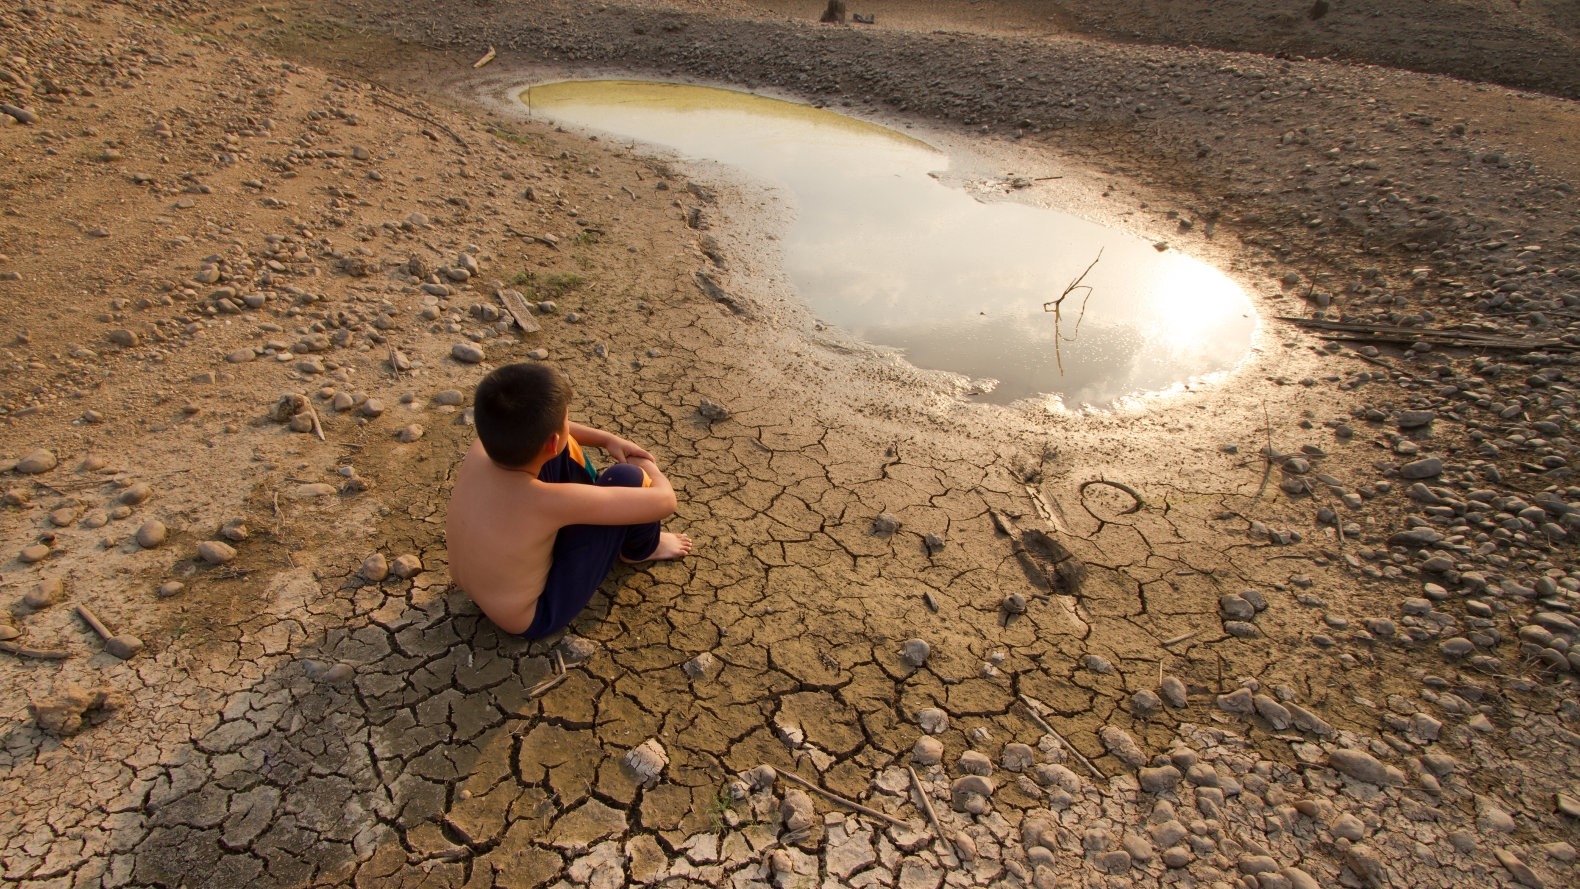 Entro il 2050 la metà della popolazione della Terra può rimanere senza acqua dolce